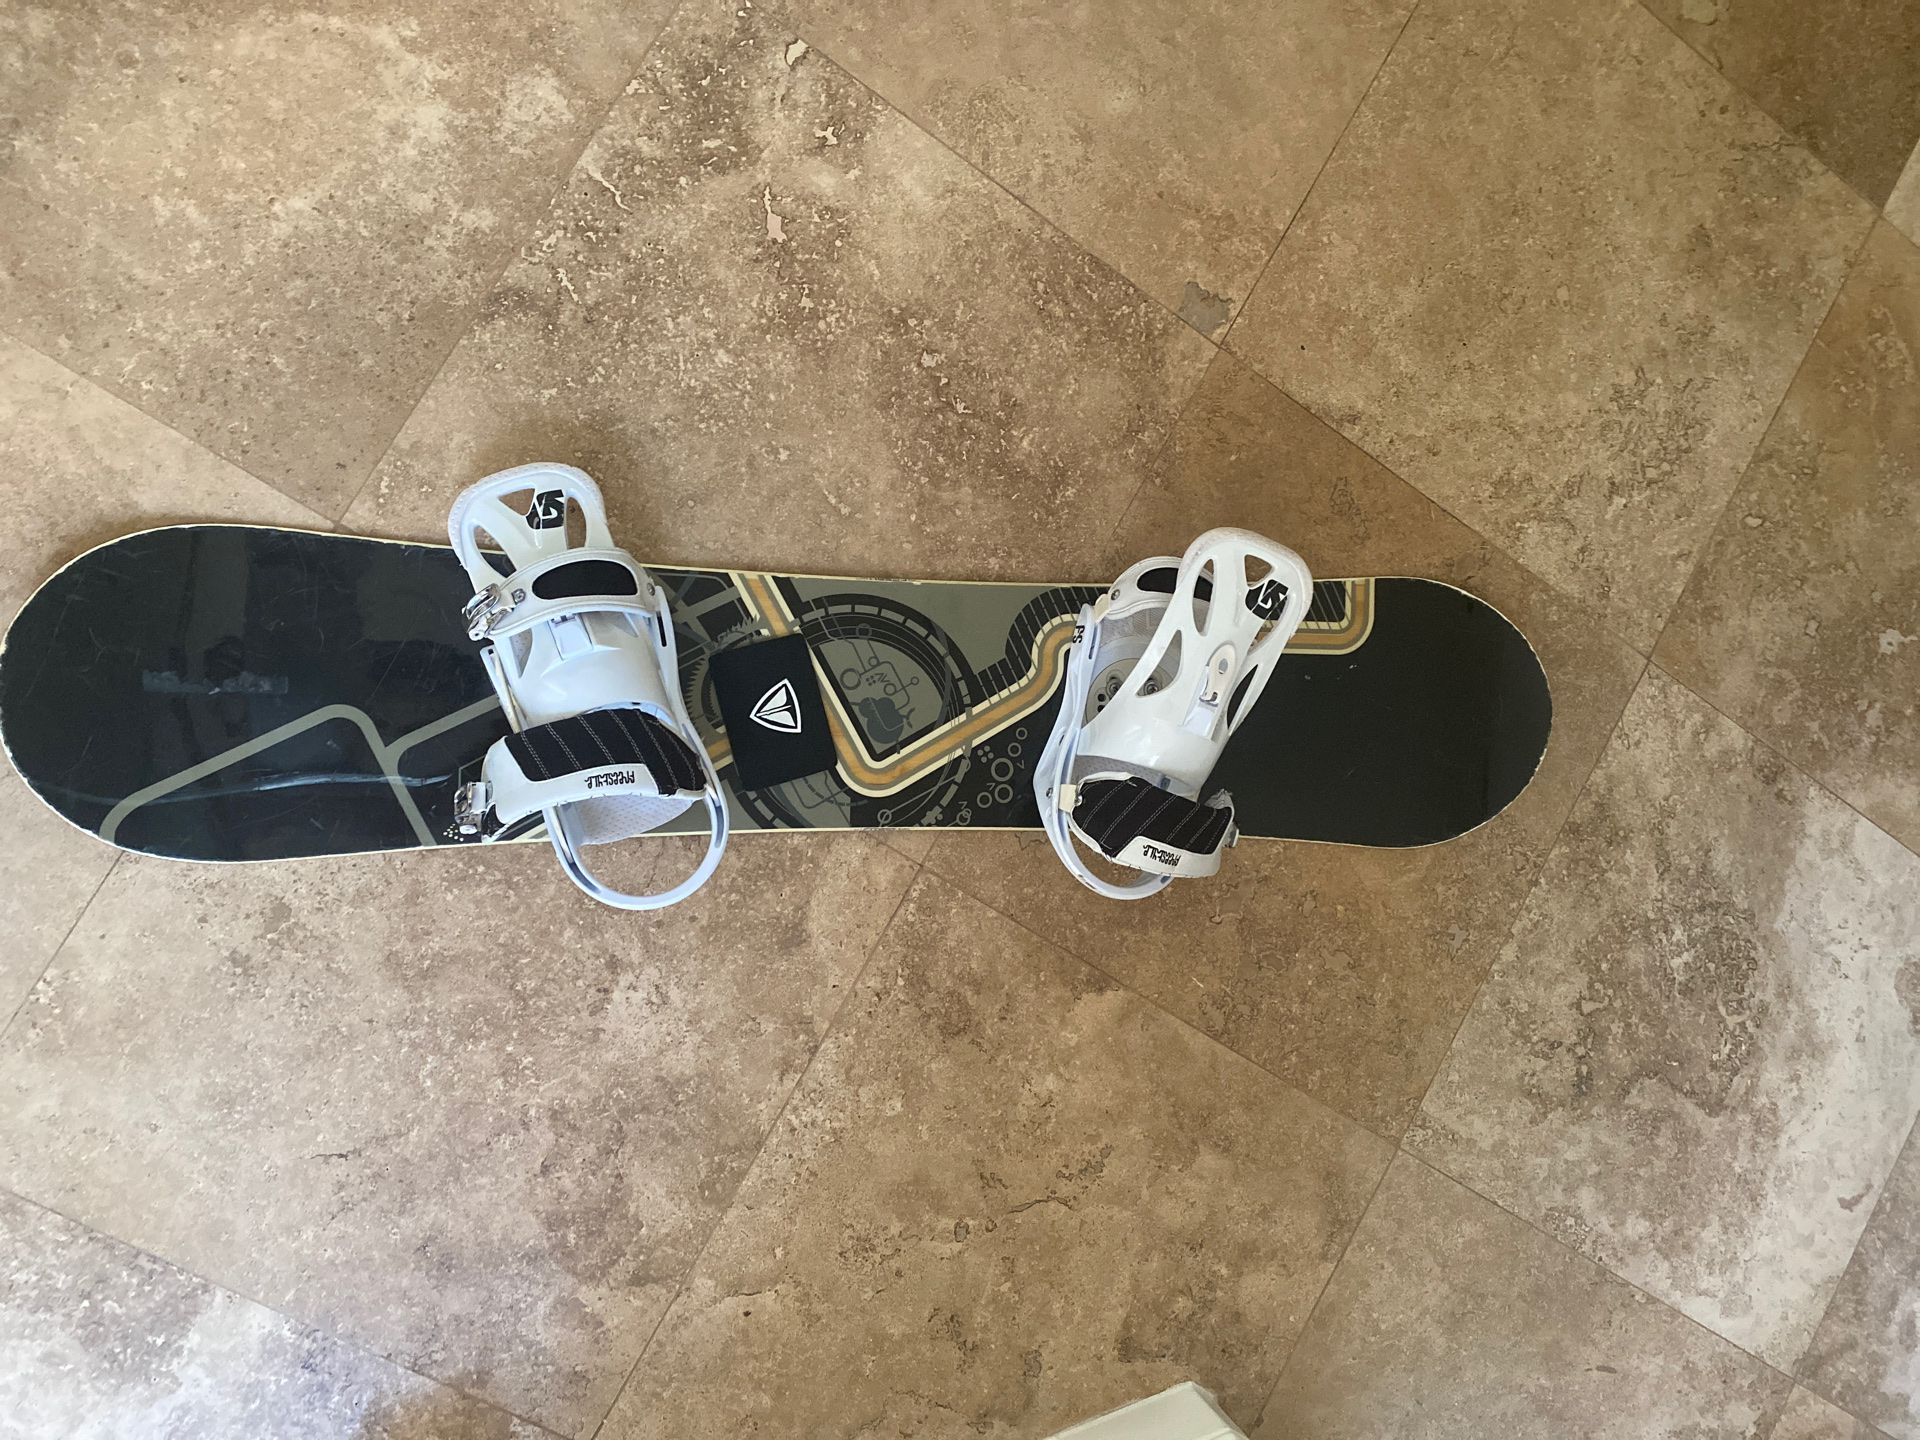 Fresh Snowboard with Burton bindings